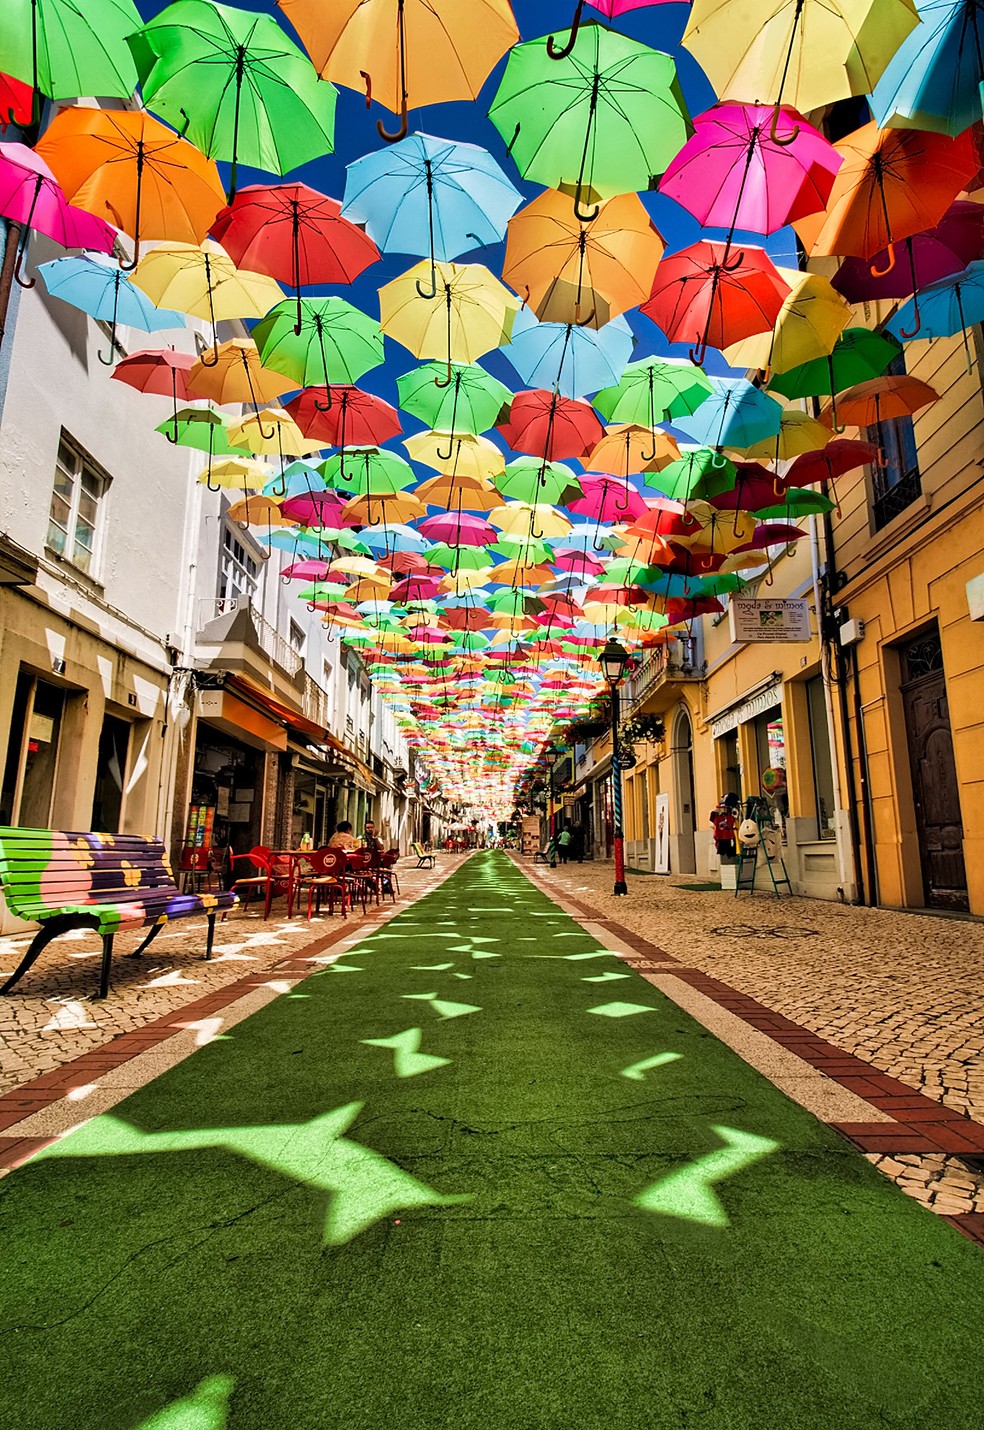 O projeto "Umbrella Sky" cria um céu colorido em Agueda, Portugal — Foto: Flickr / Kevin Lecureur Photographies / Creative Commons